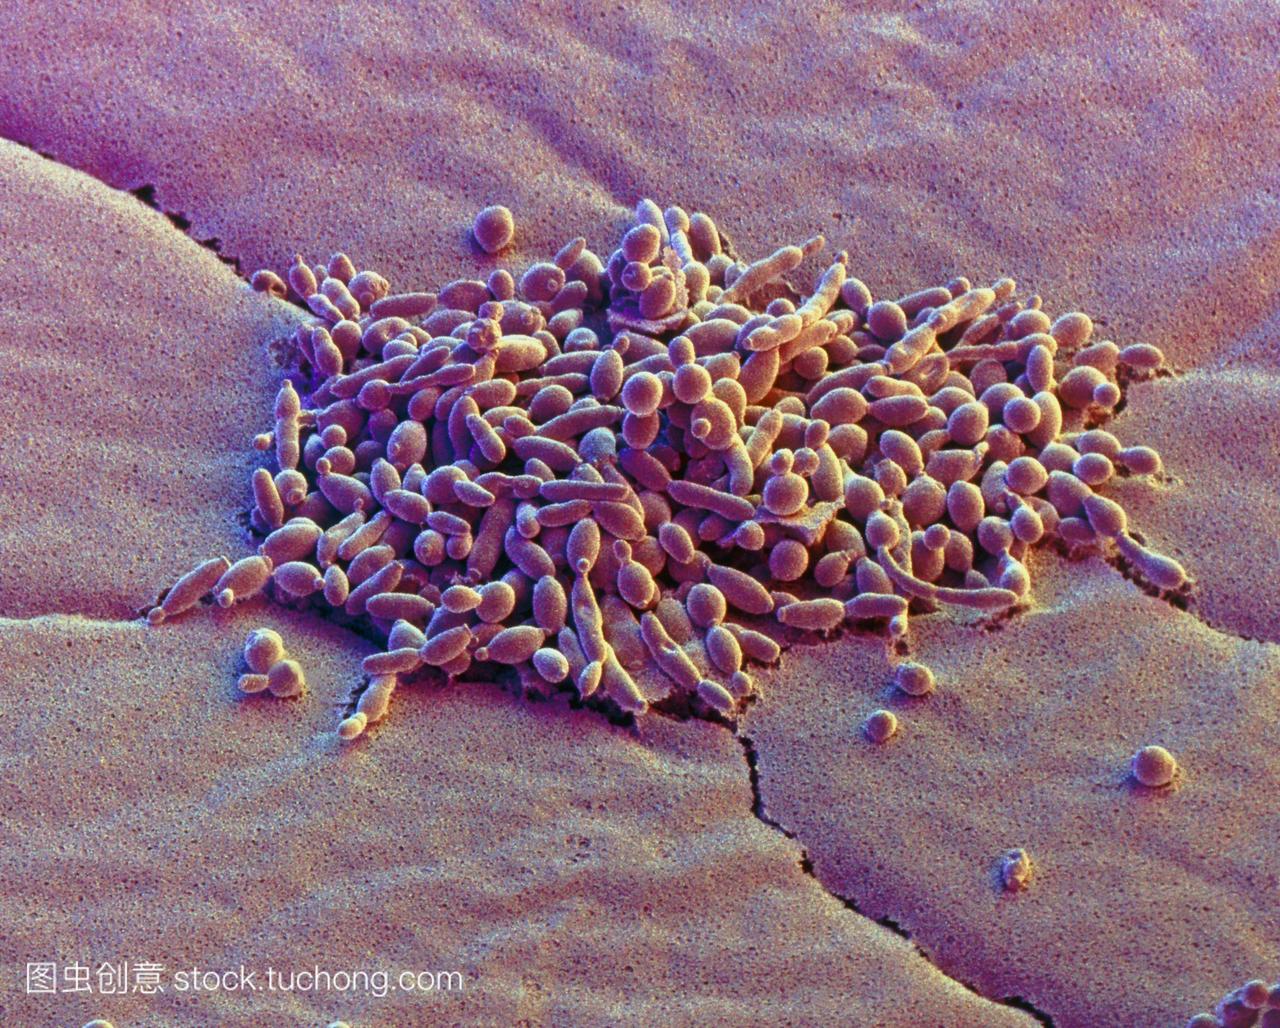 酵母细胞。彩色扫描电子显微镜sem,一群酵母